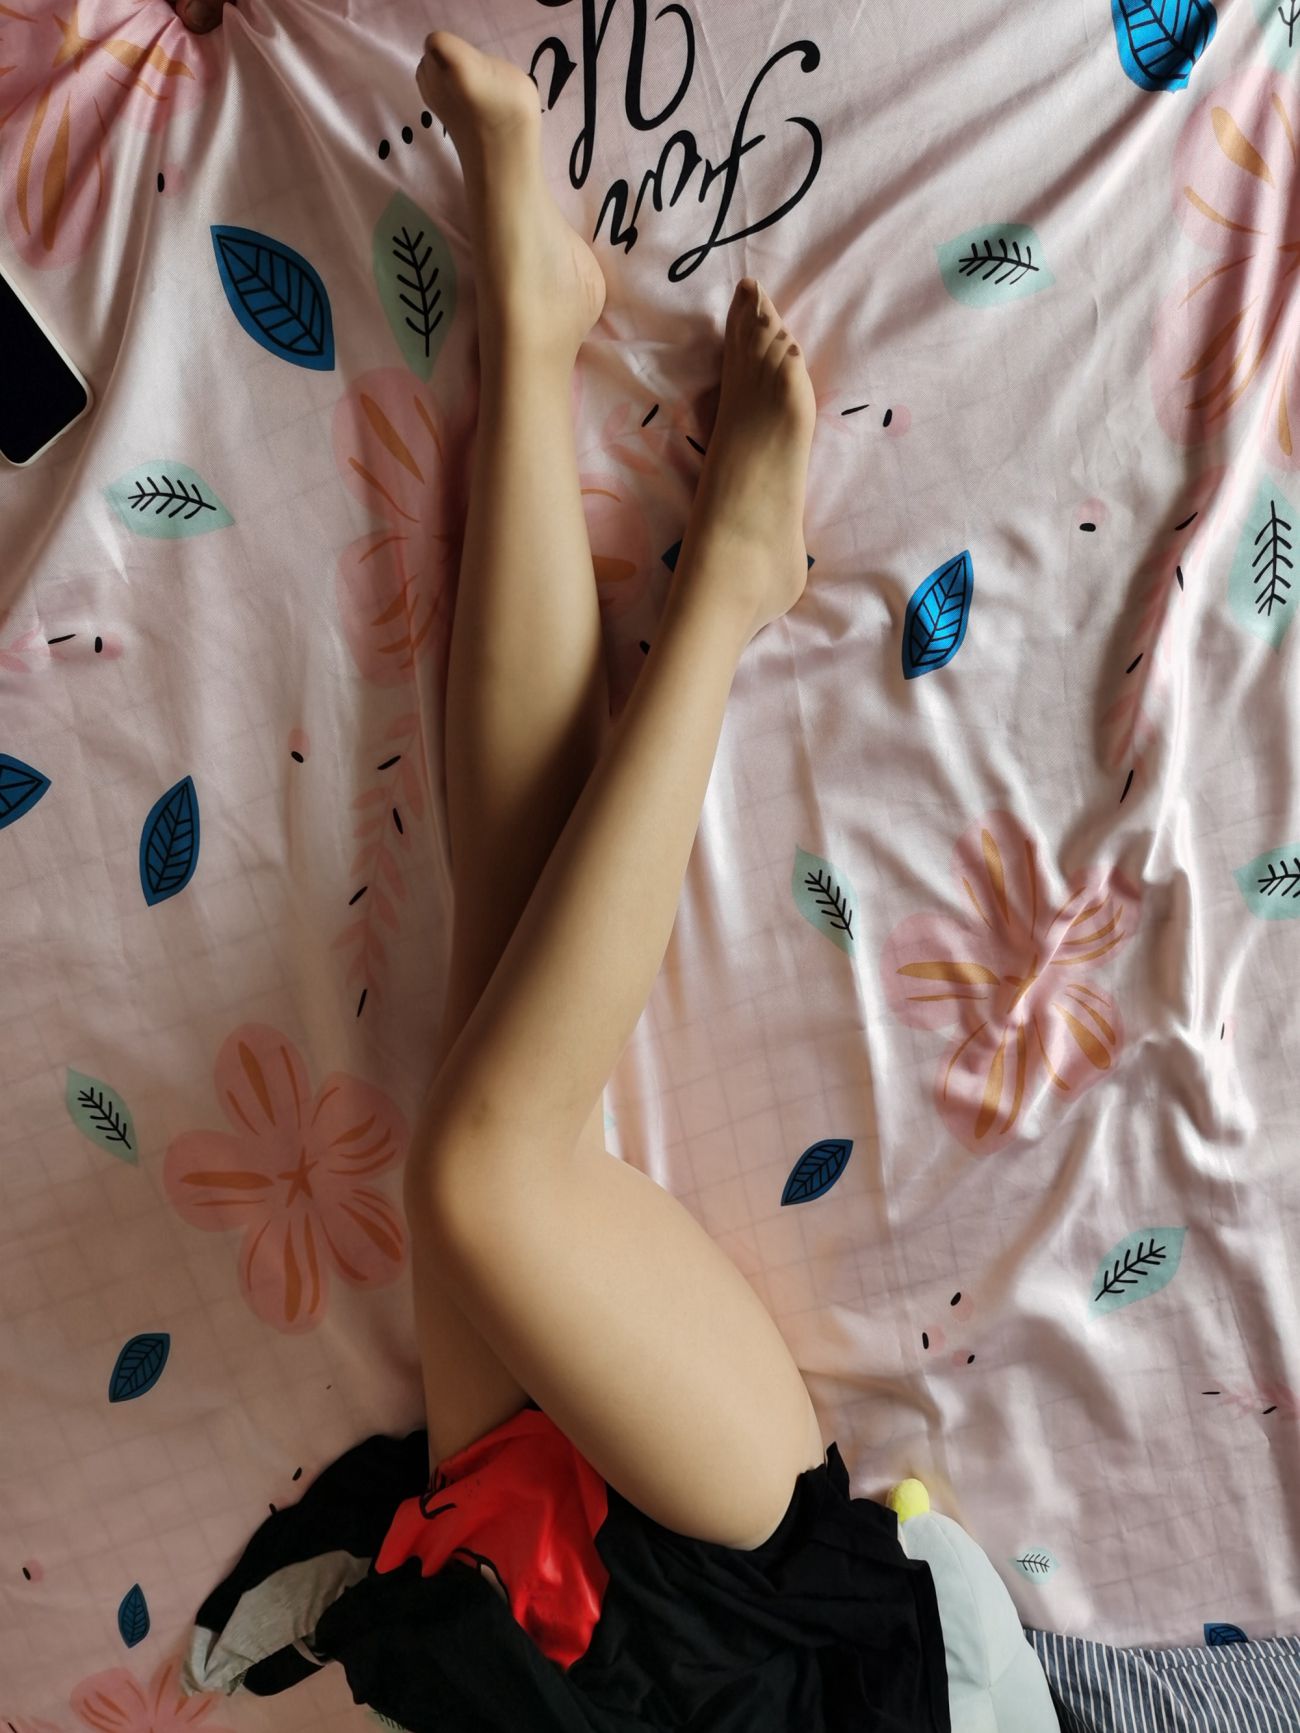 [美女私拍]说了好久女朋友才同意让拍她的丝袜美腿 (16)